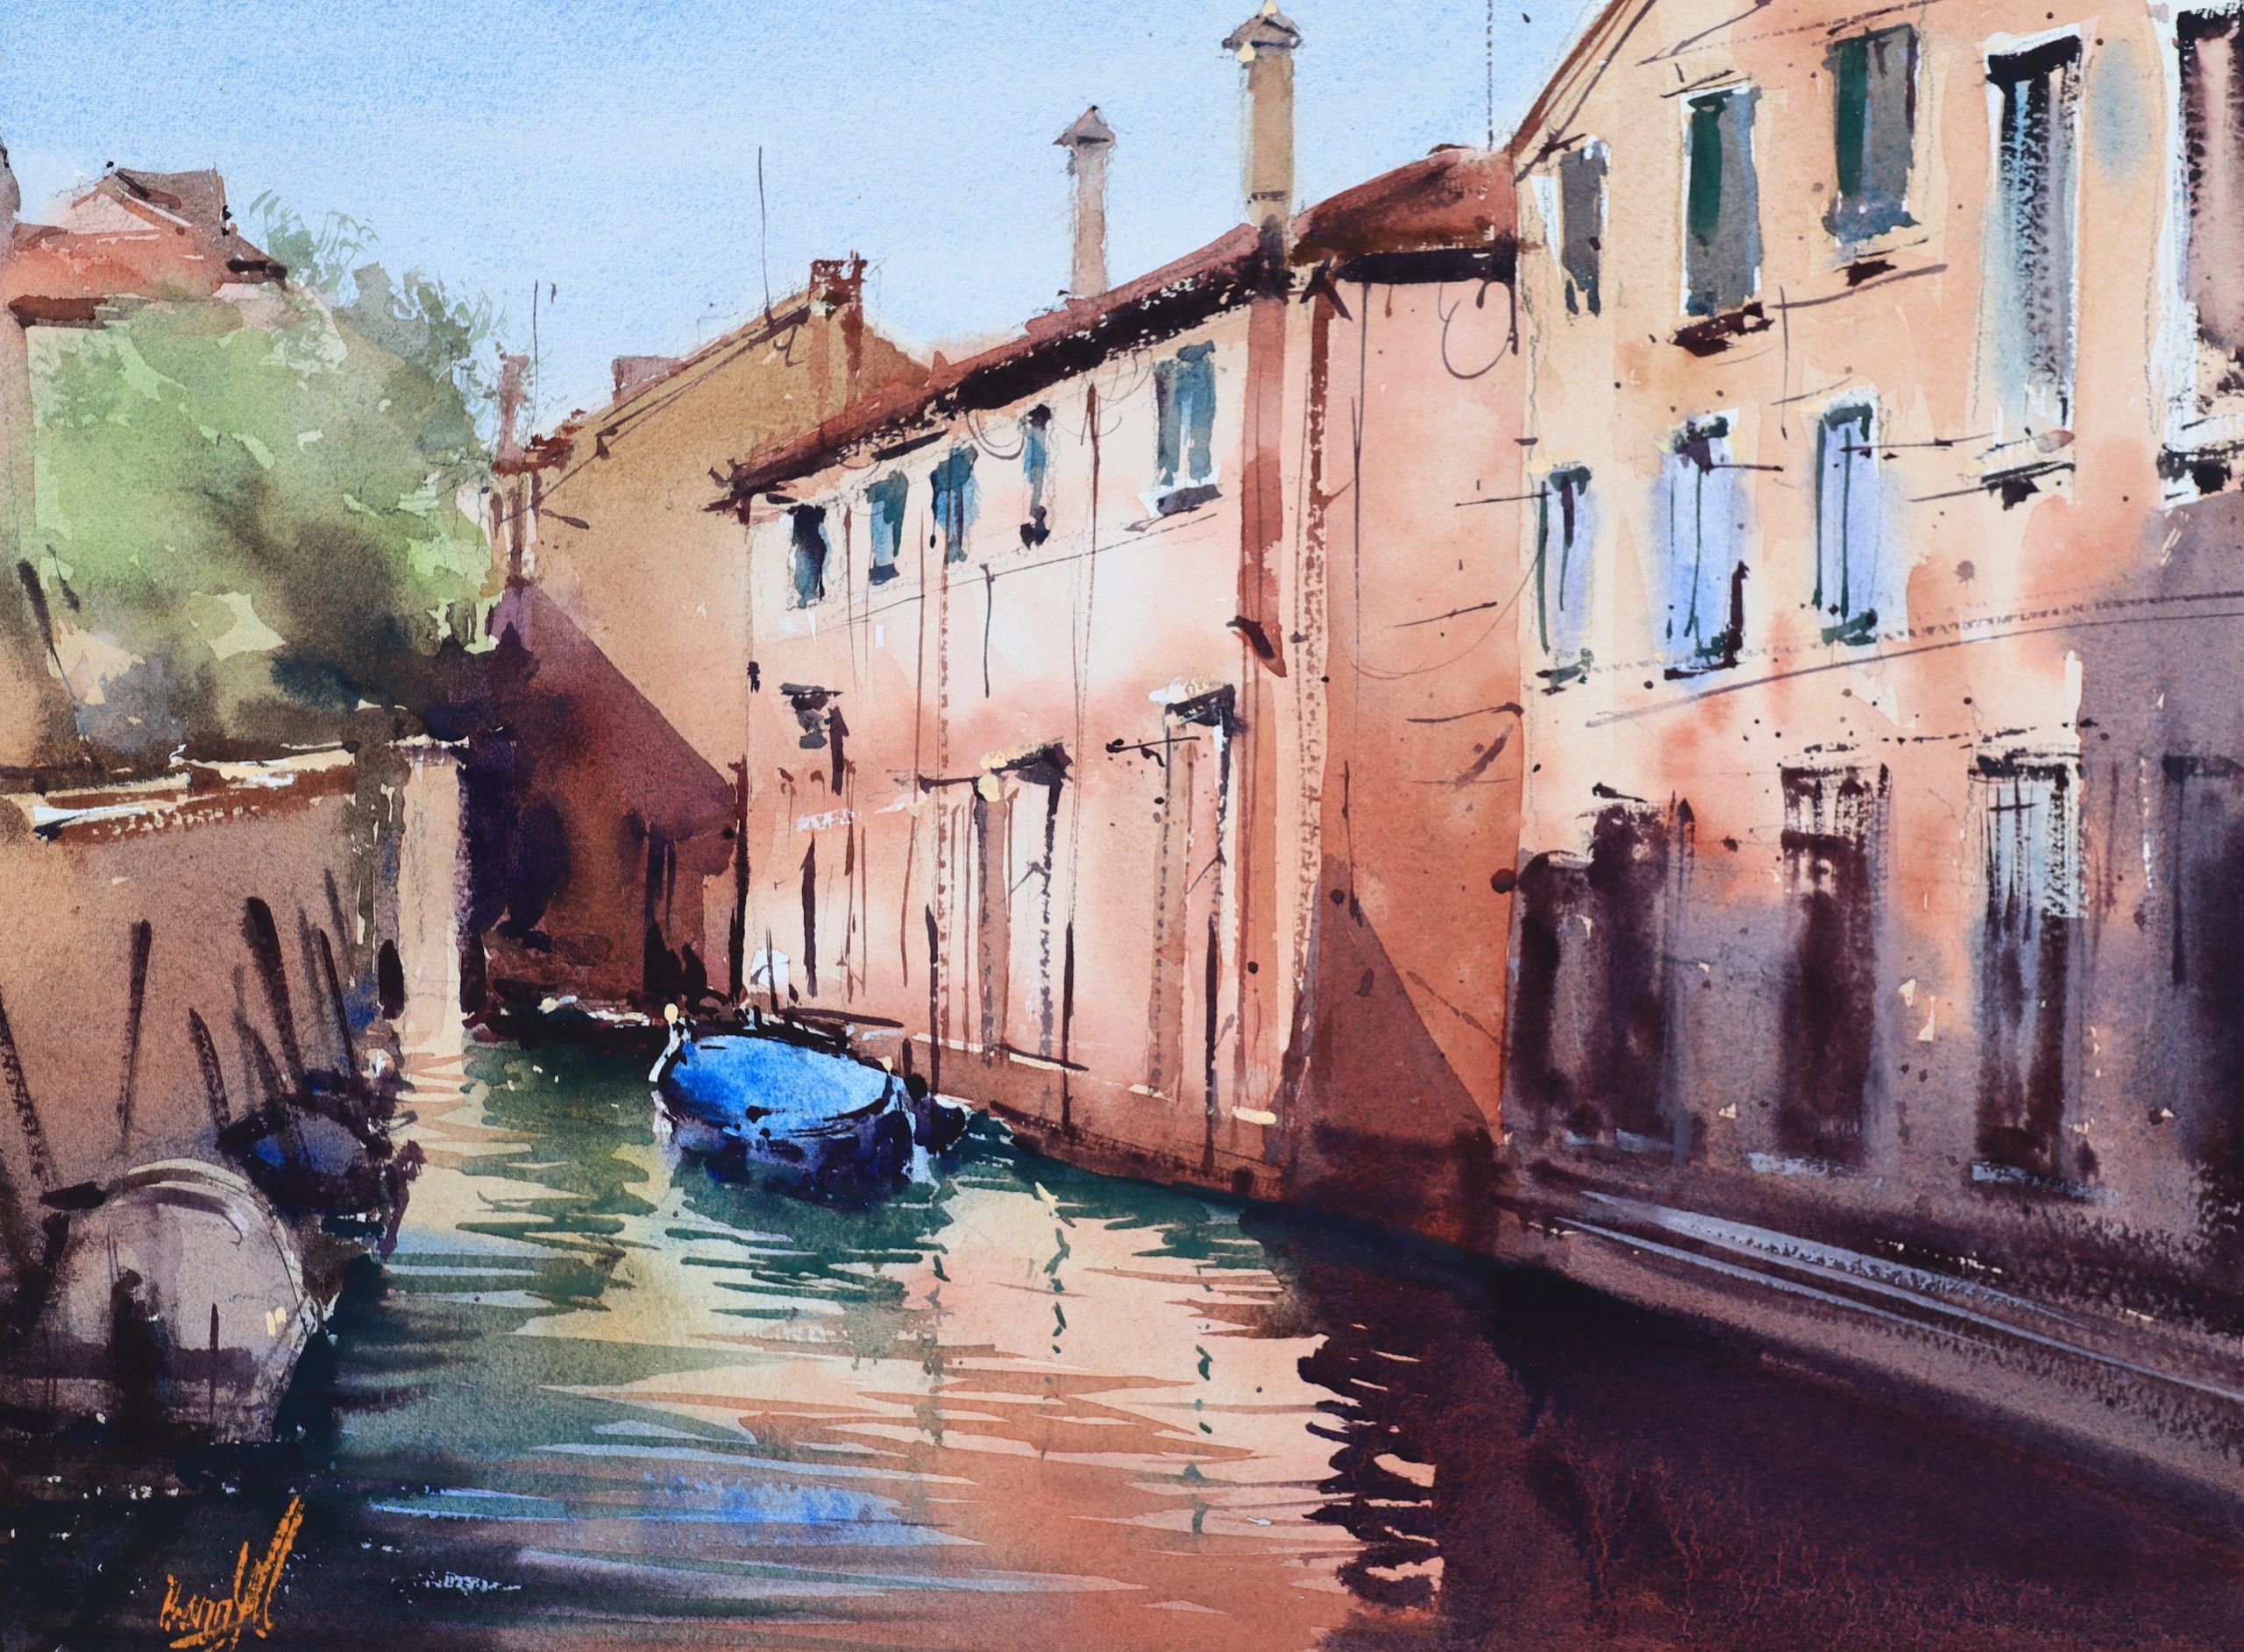 Venice (2023) - Arches 300 gsm rough paper
30 cm x 40 cm